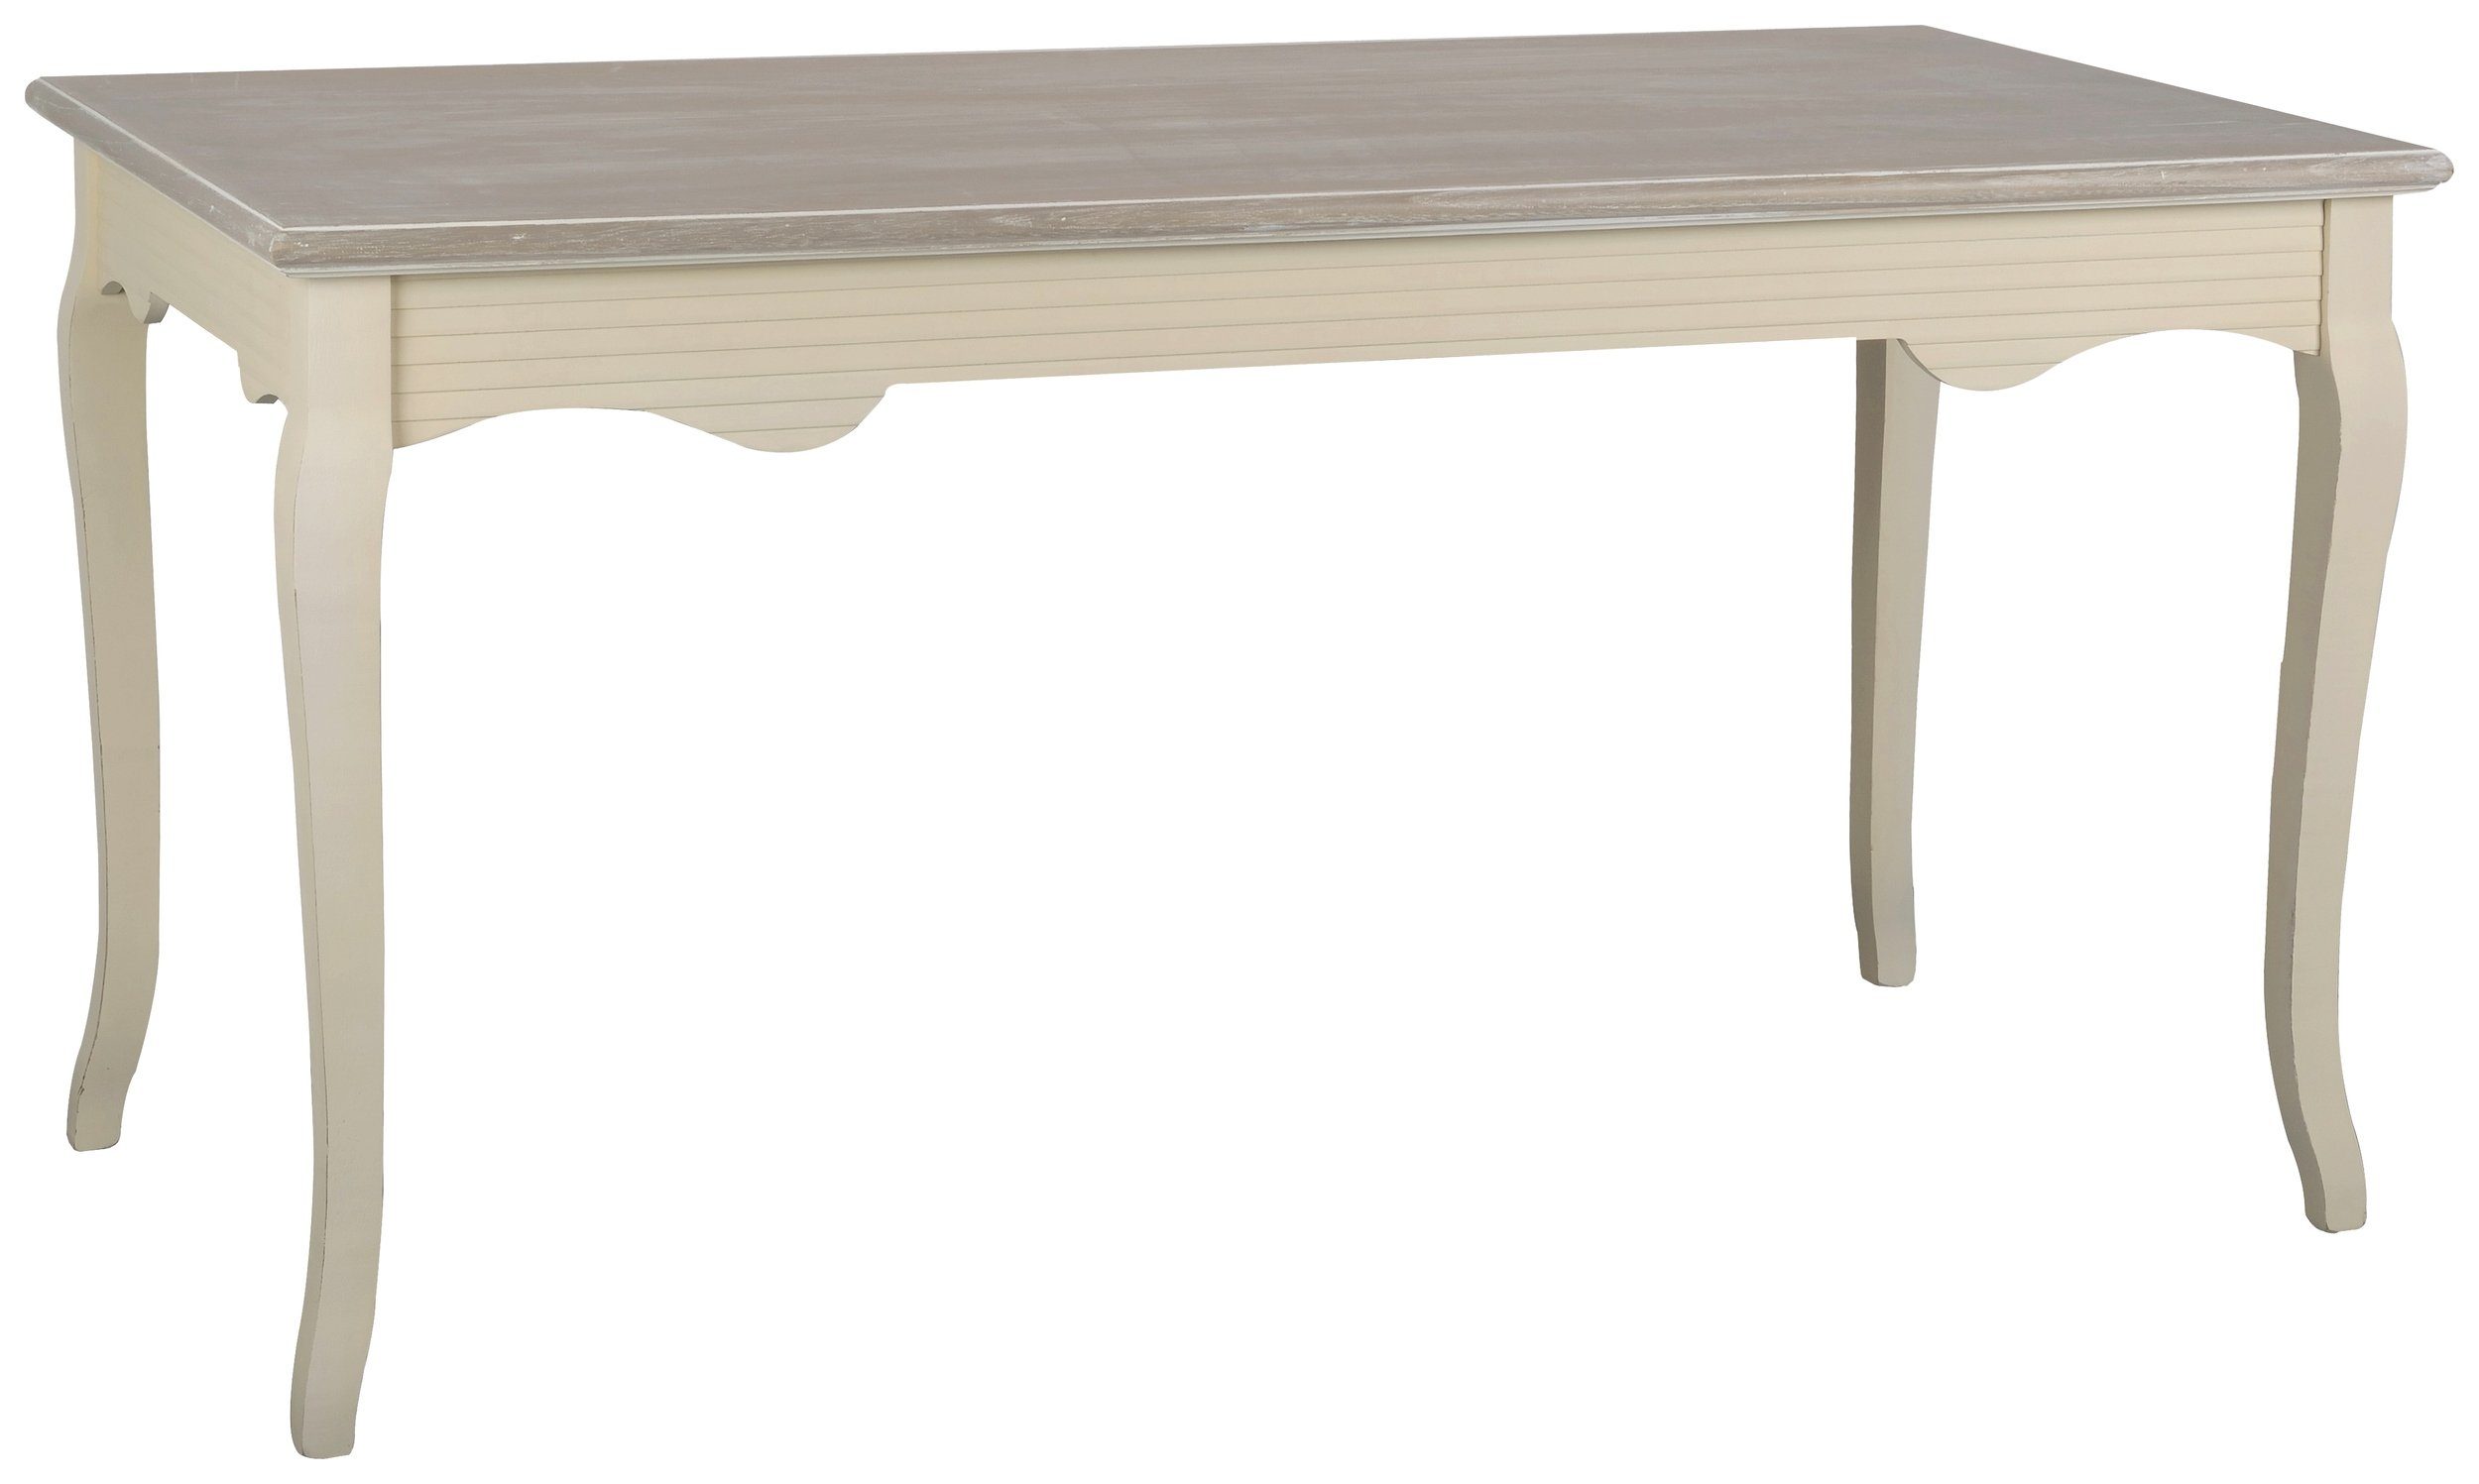 Stylefy Esstisch Pesaro Pappel Creme Hellbraun (Esstisch, Tisch), aus Massivholz, rechteckig, viel Stauraum, Landhausstil | Esstische